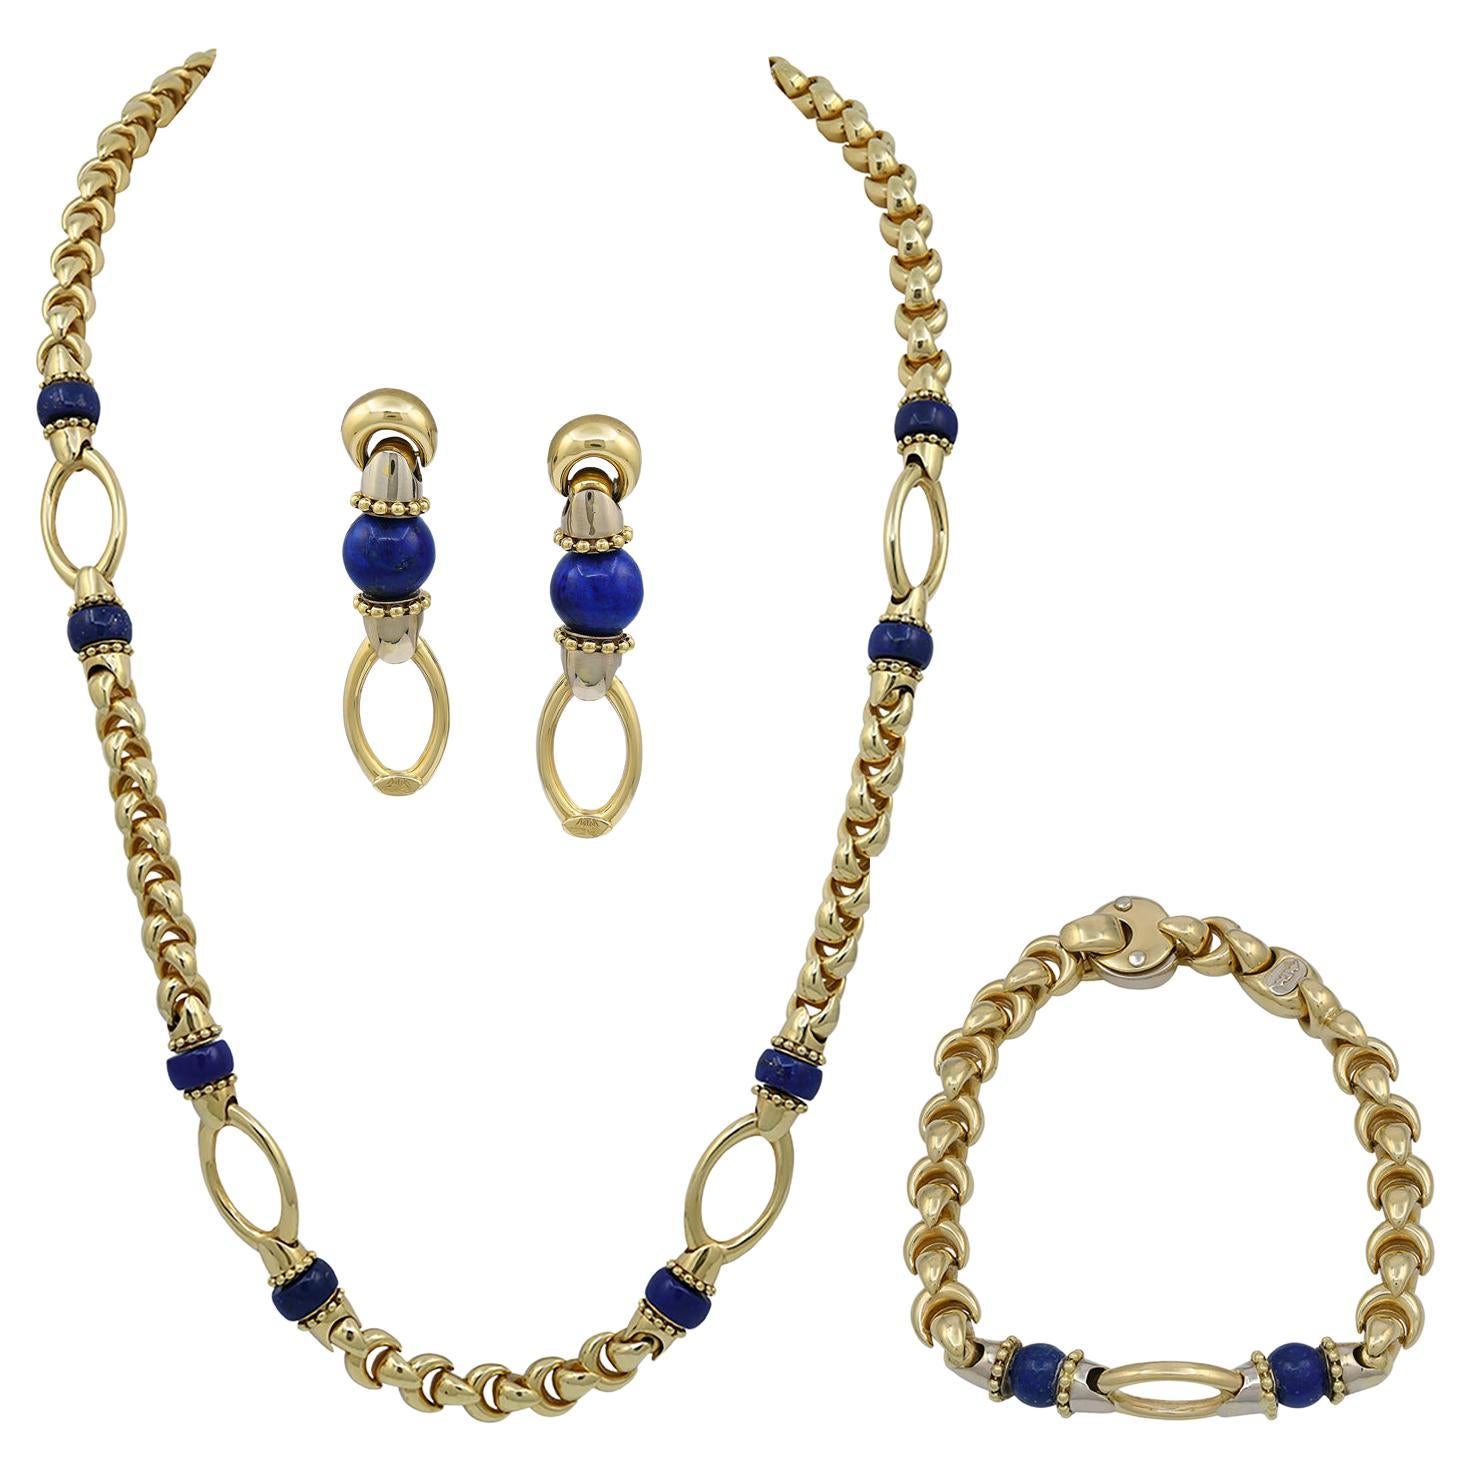 Collier, boucles d'oreilles, bracelet et bijoux en or jaune 18 carats